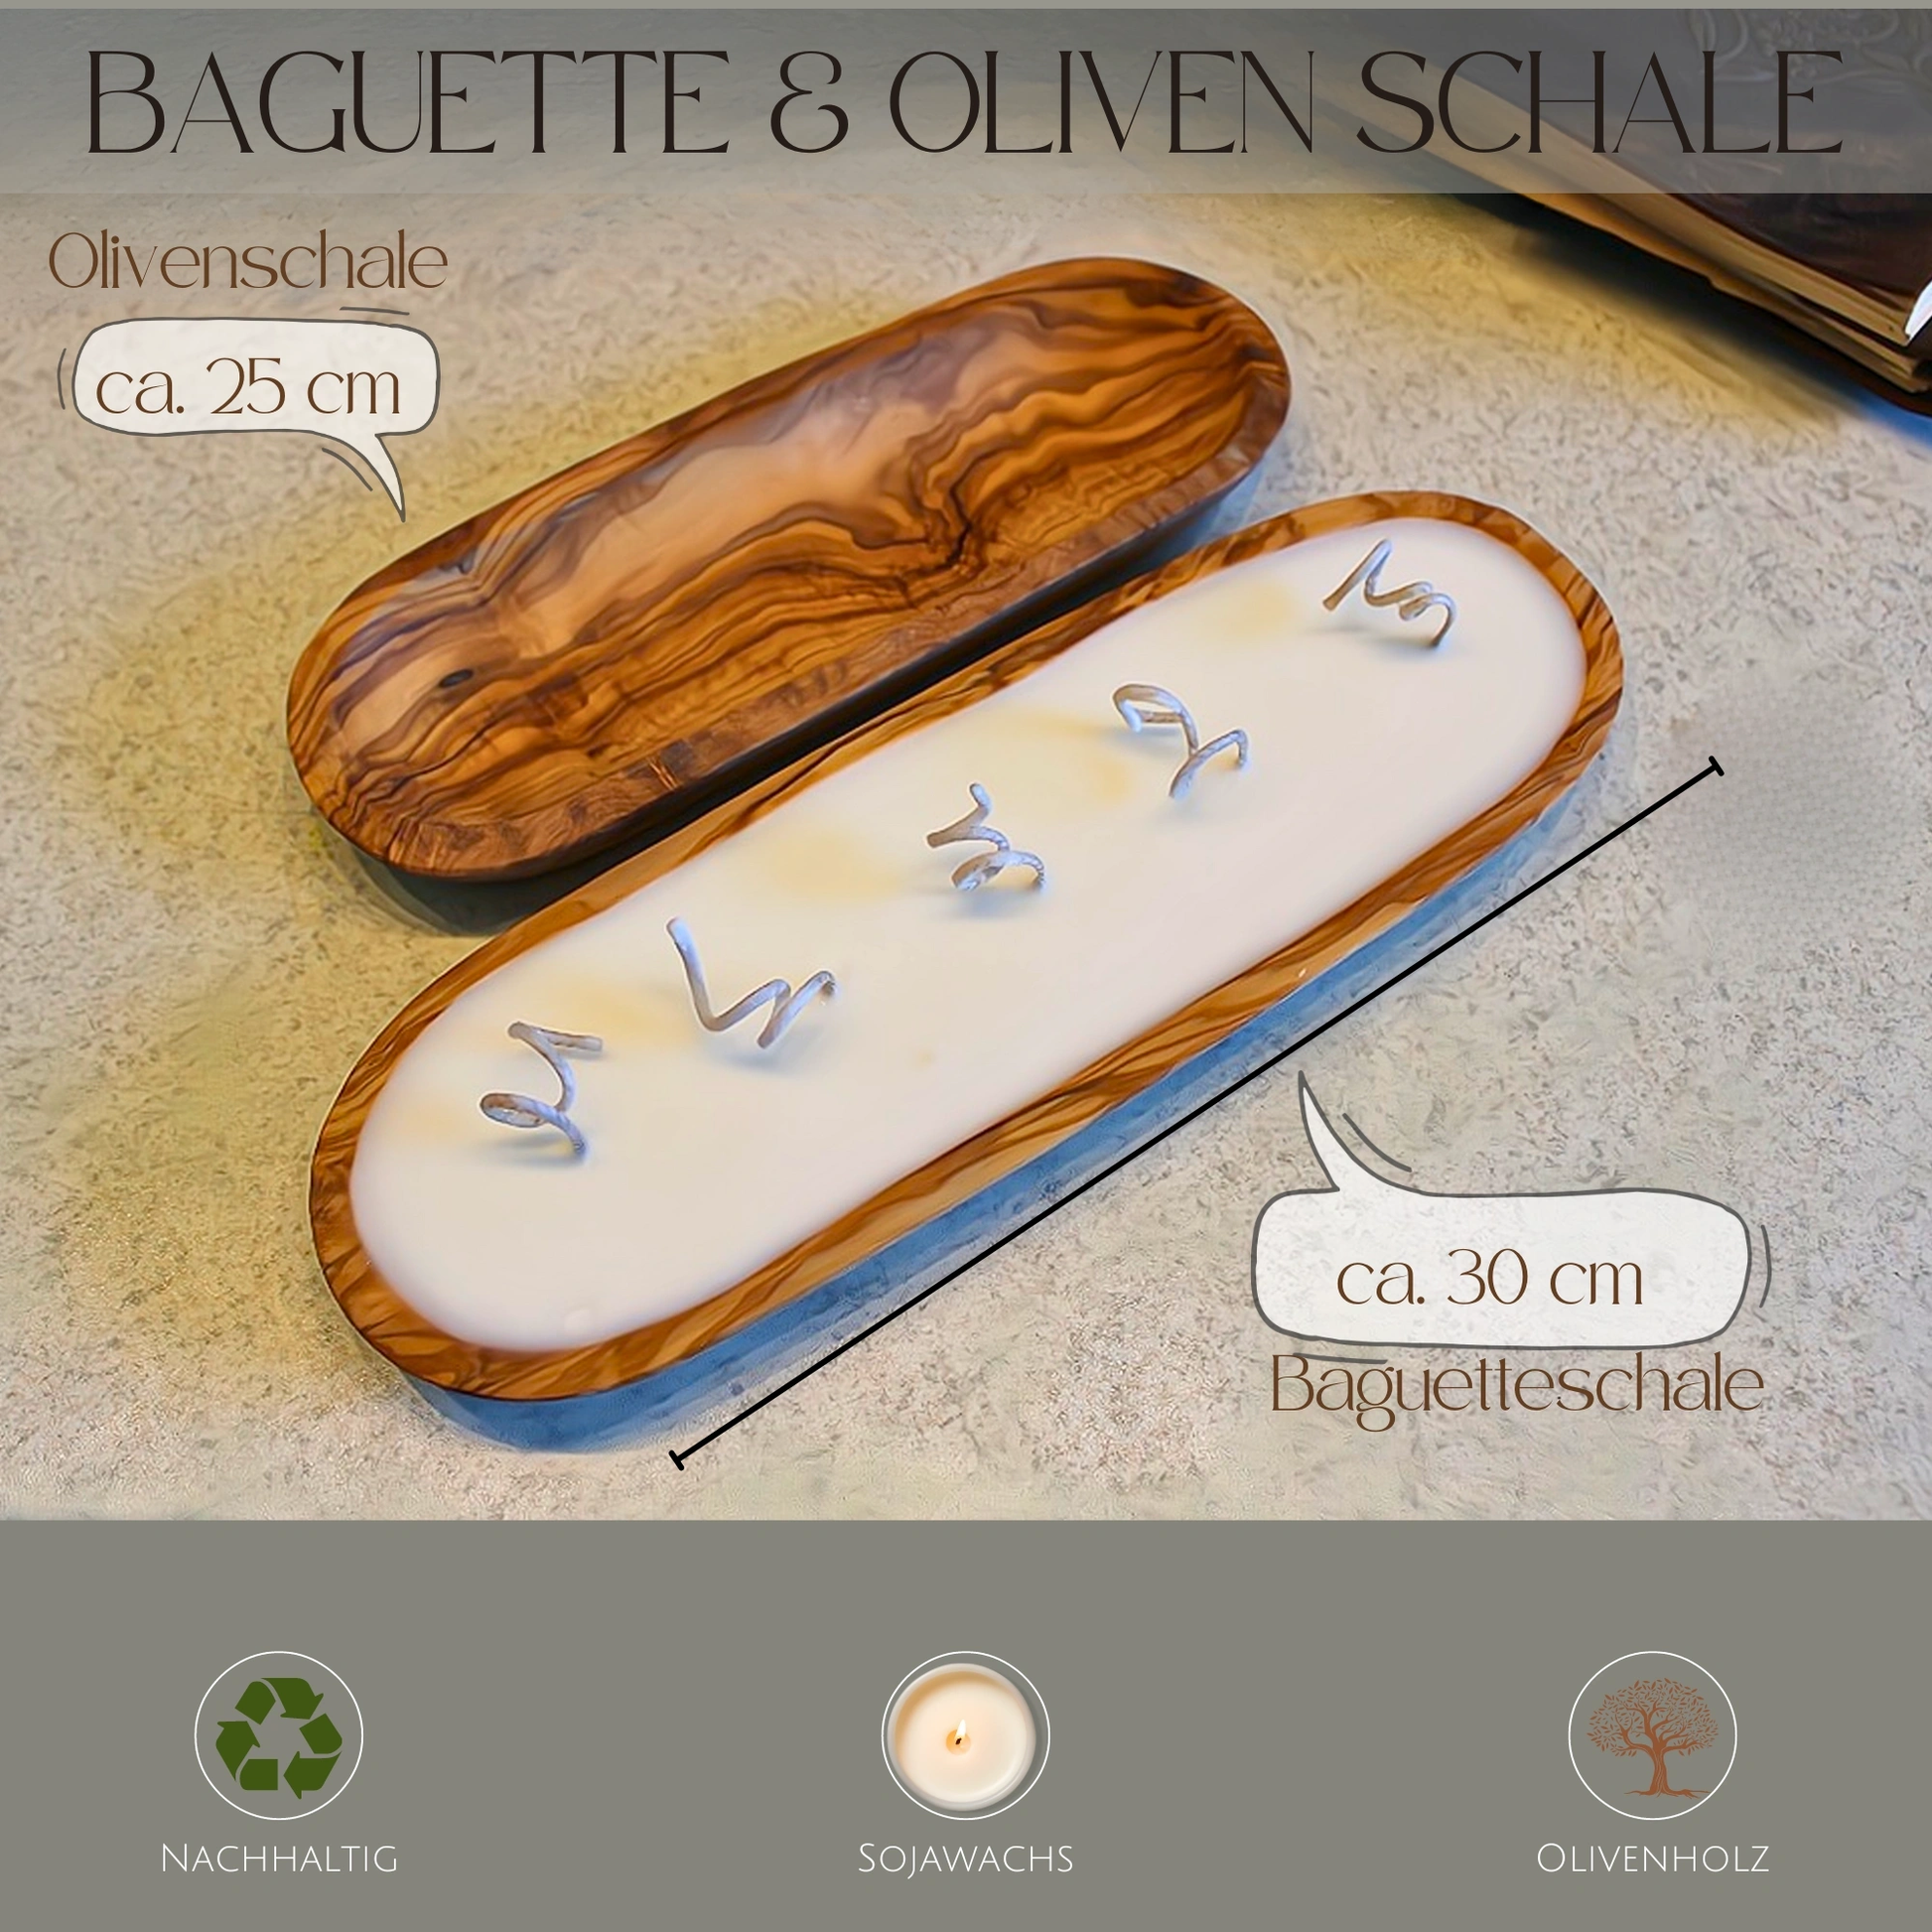 Sojawachskerze in Olivenholzschale "Baguette" 30 cm Peonies